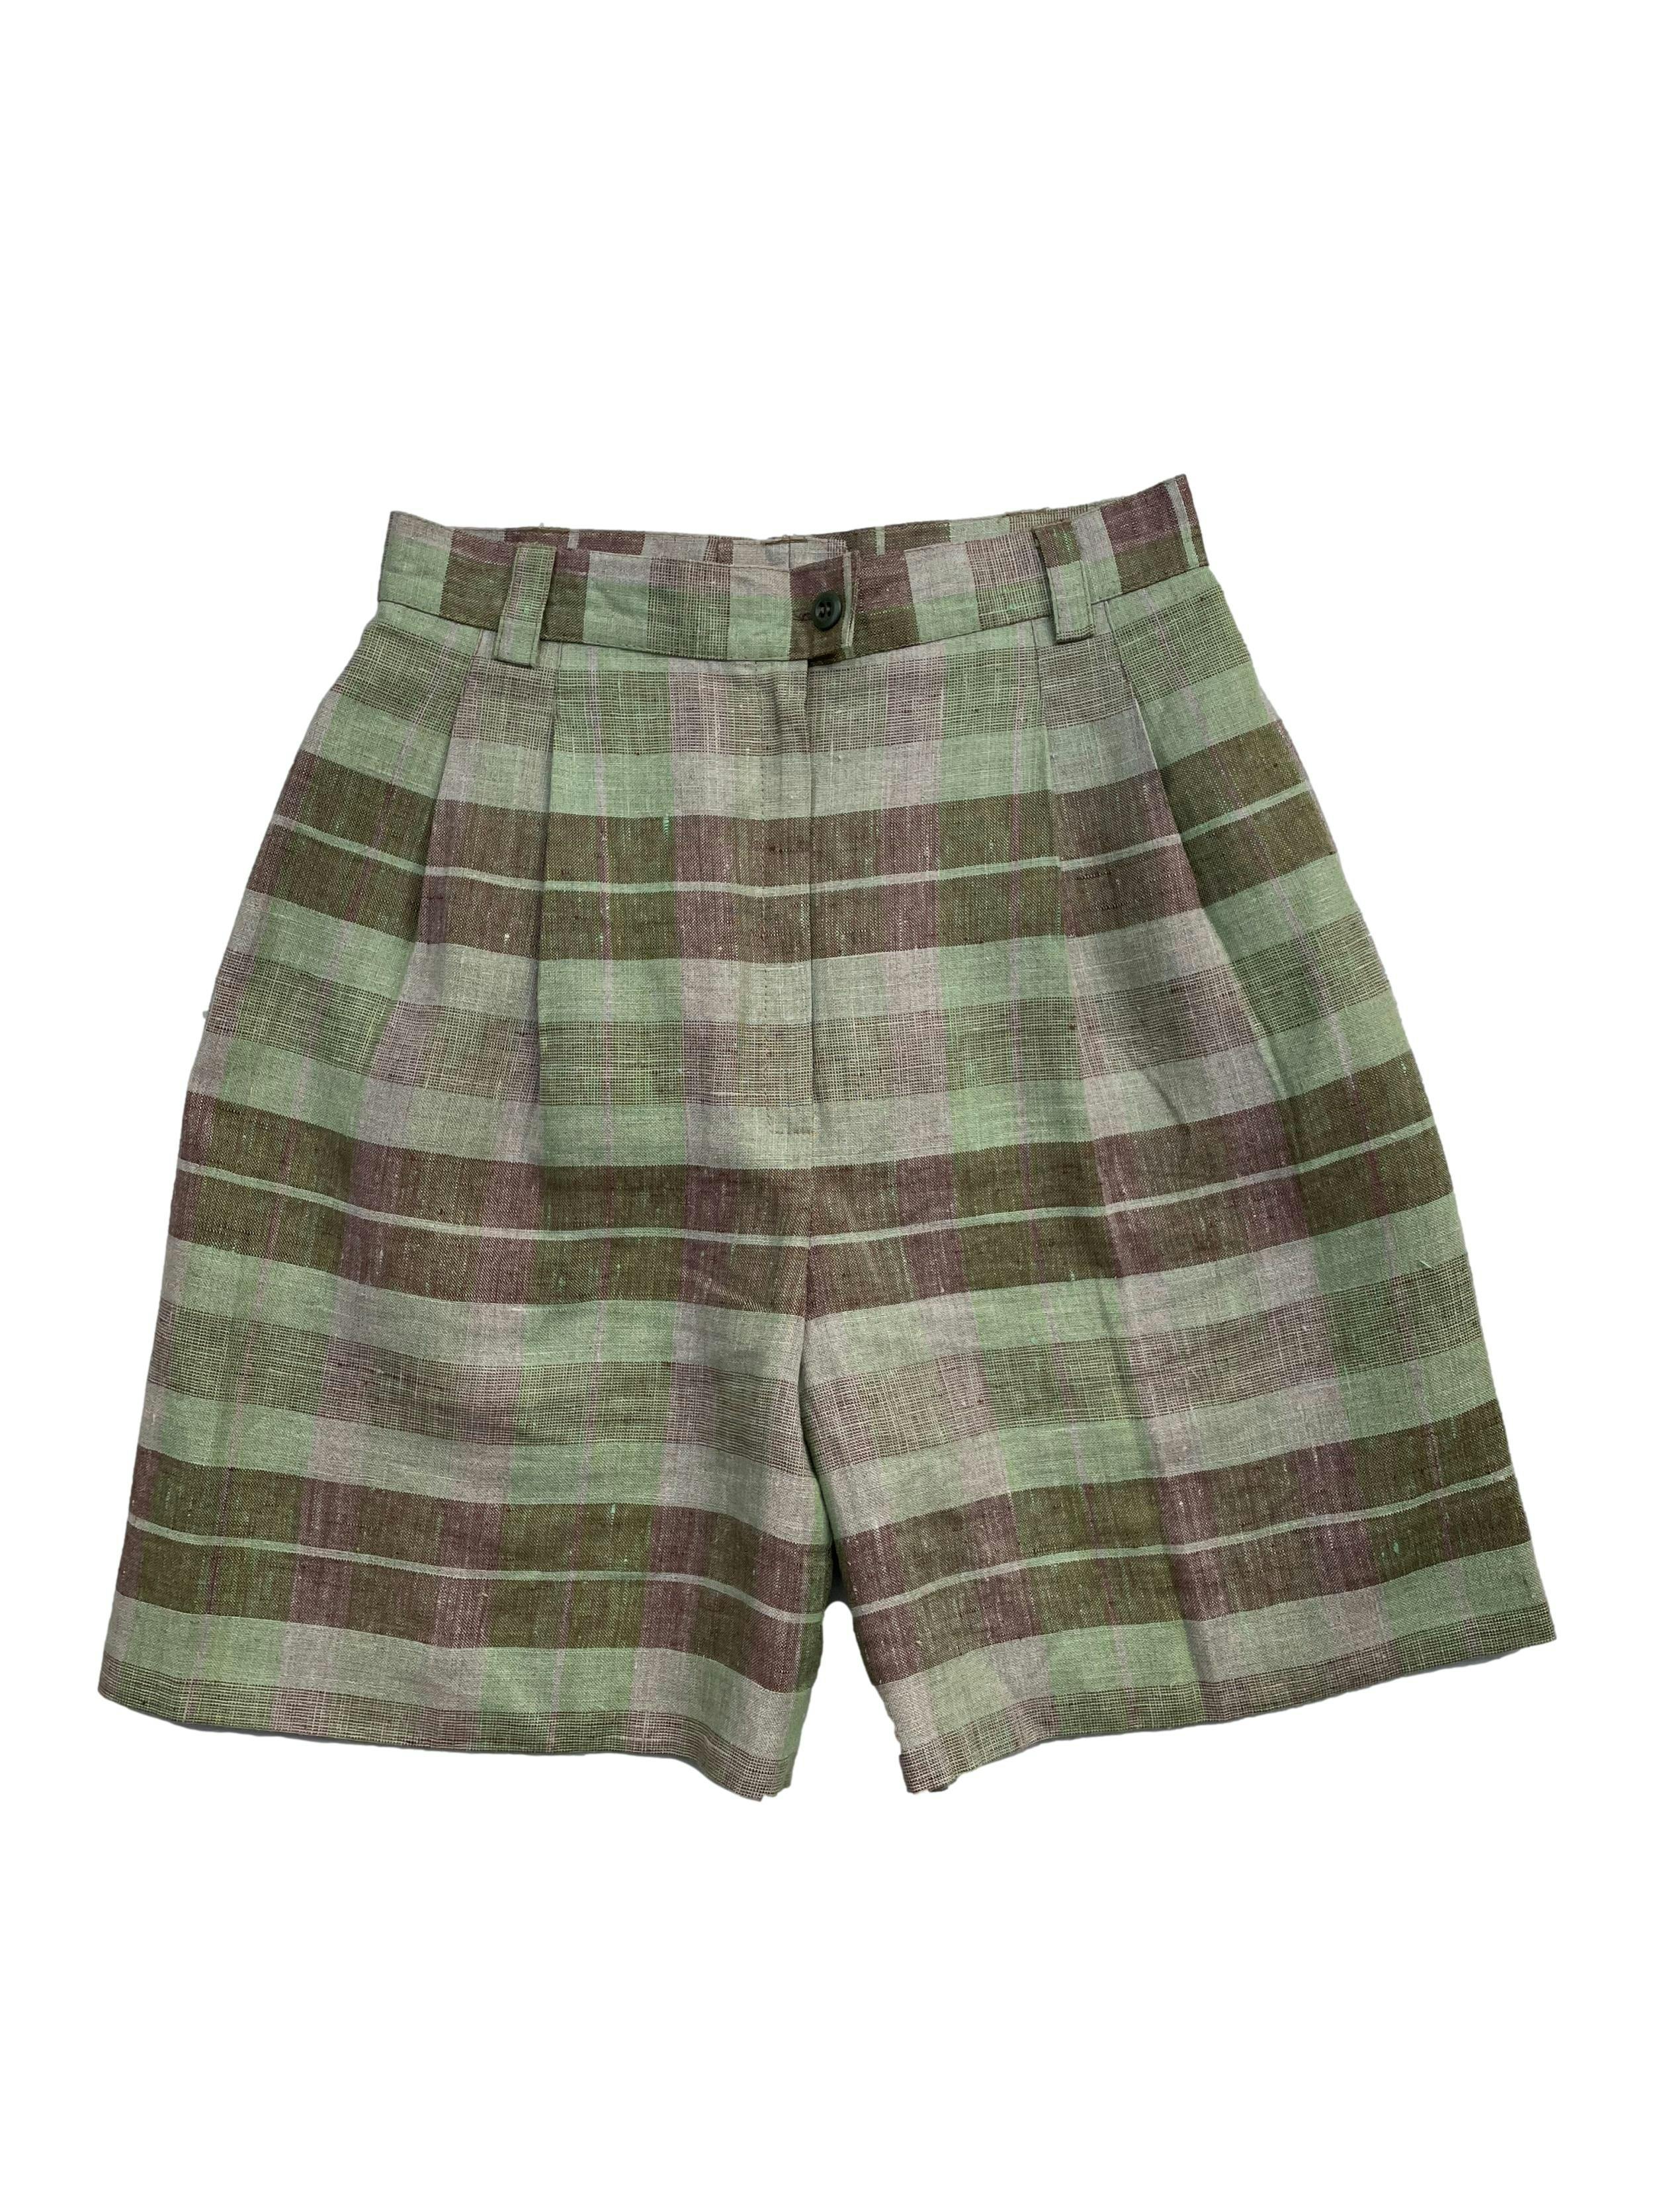 Short vintage tela tipo lino ,a cuadros en tonos verde y rosado con bolsillos laterales. Nuevo sin etiqueta. Cintura 68cm,Largo 49cm.